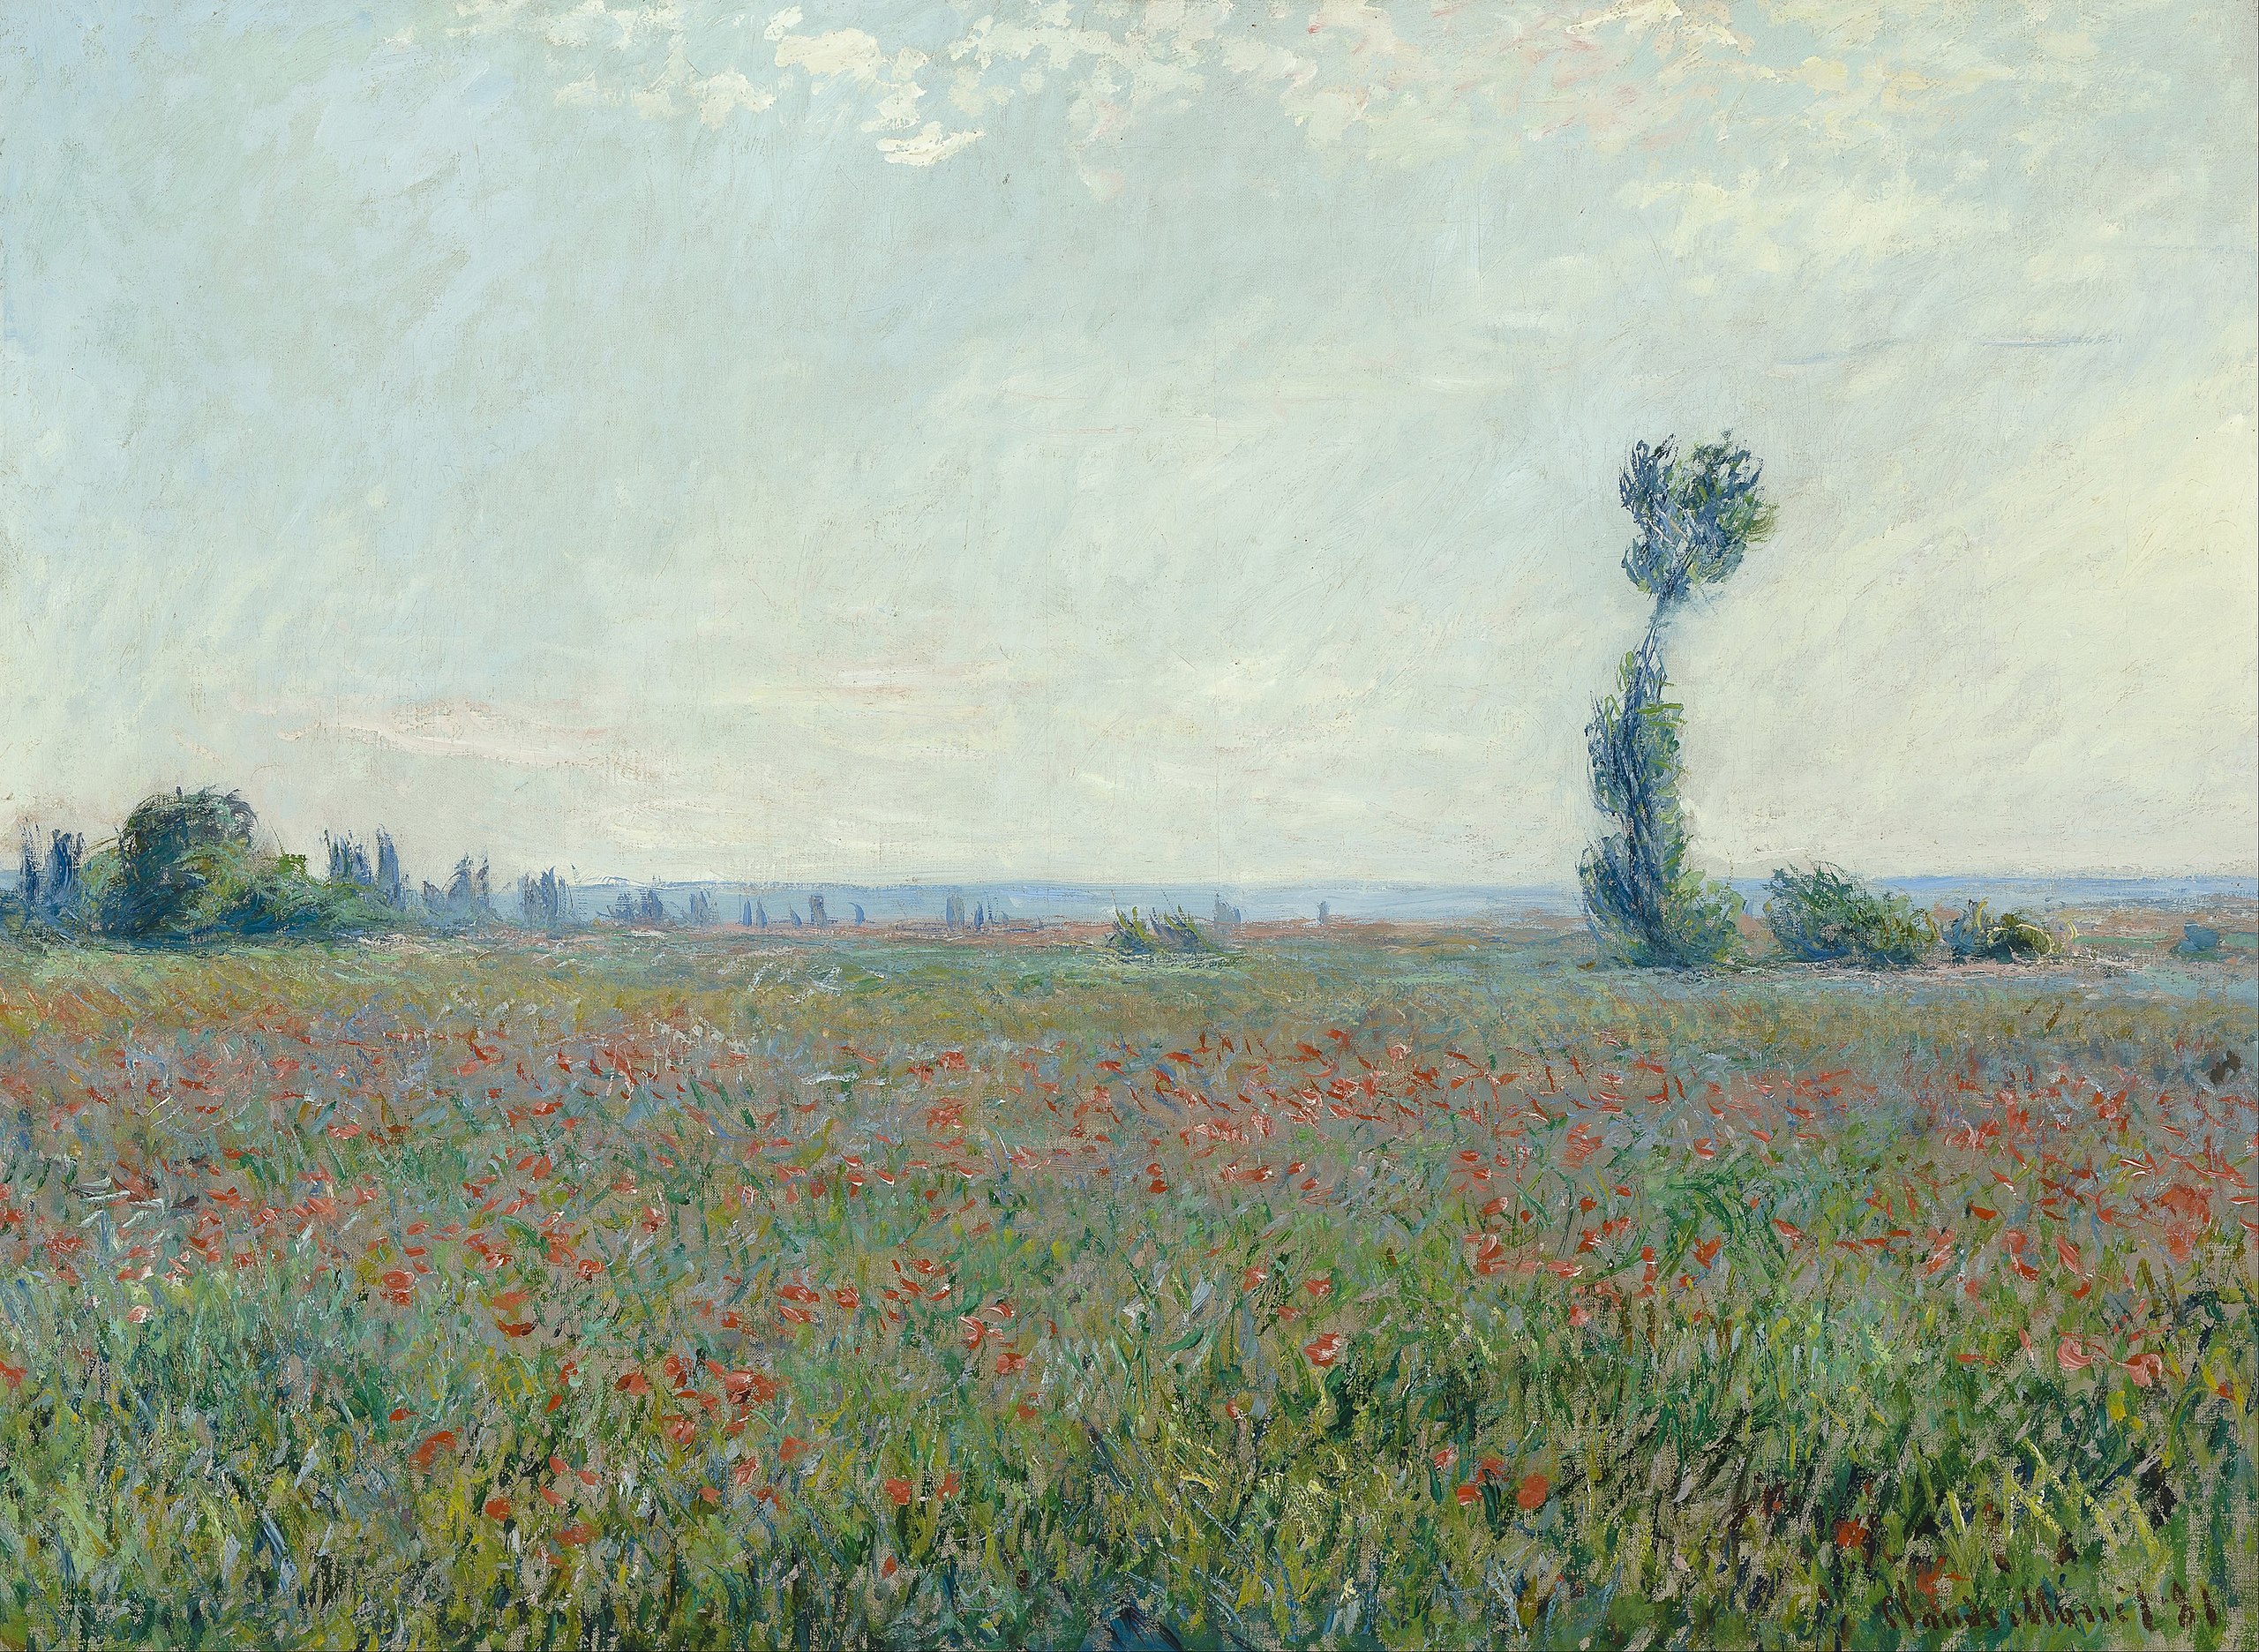 ケシ畑 by Claude Monet - 1881年 - 79 x 58 cm 